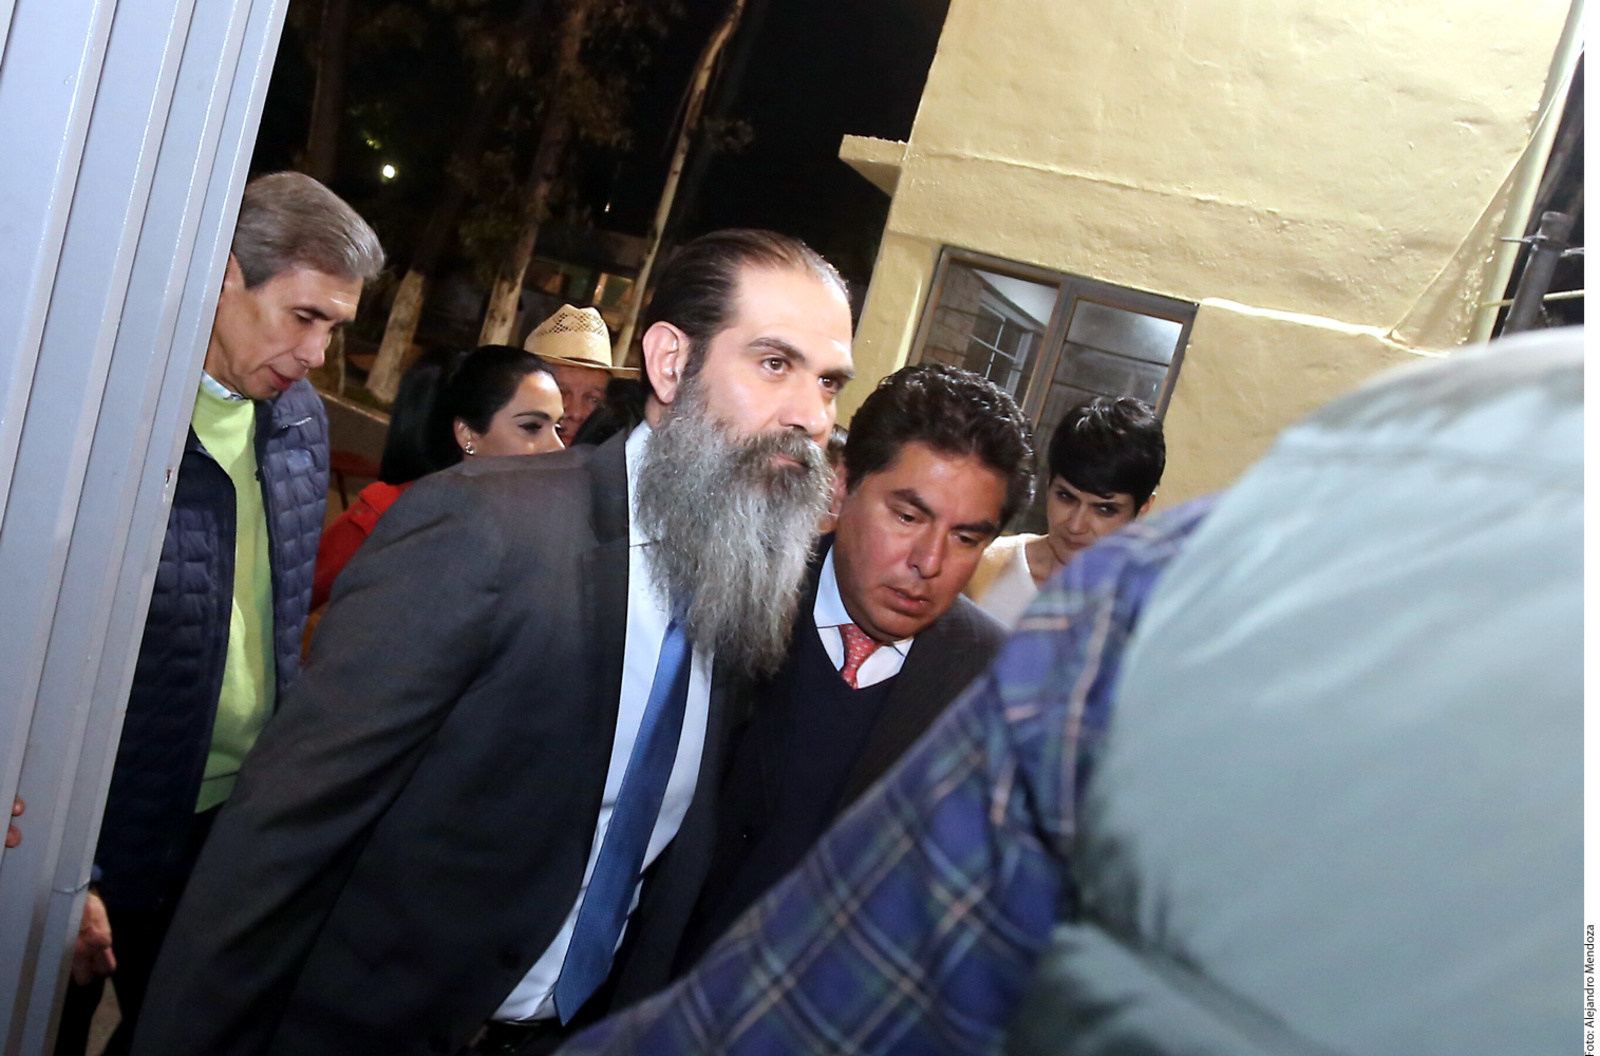 Condicional. Antonio Lozano Gracia, abogado del exmandatario, explicó que su cliente Guillermo Padrés (barba larga) aún tiene pendientes dos procesos: uno de ellos, por defraudación fiscal equiparada.